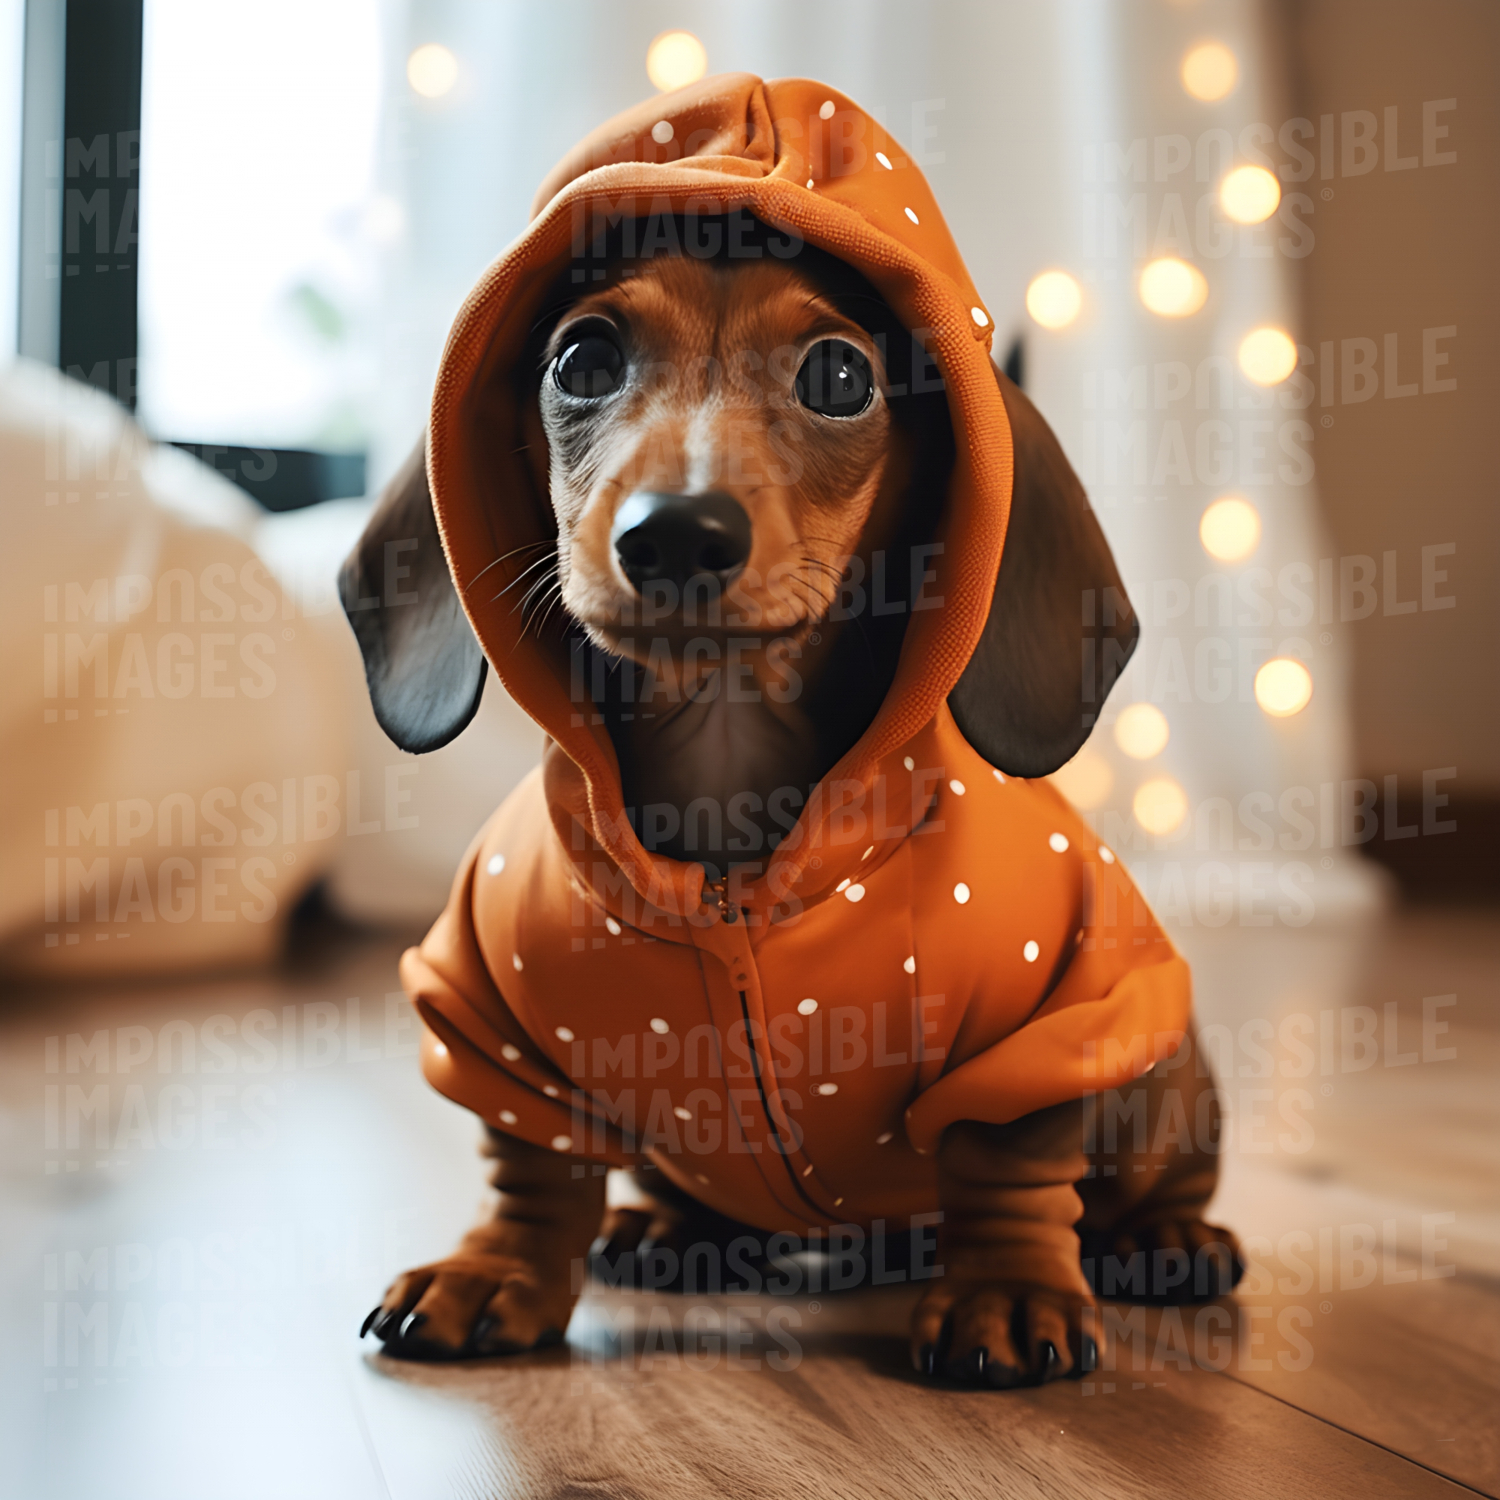 A festive dachshund in a costume